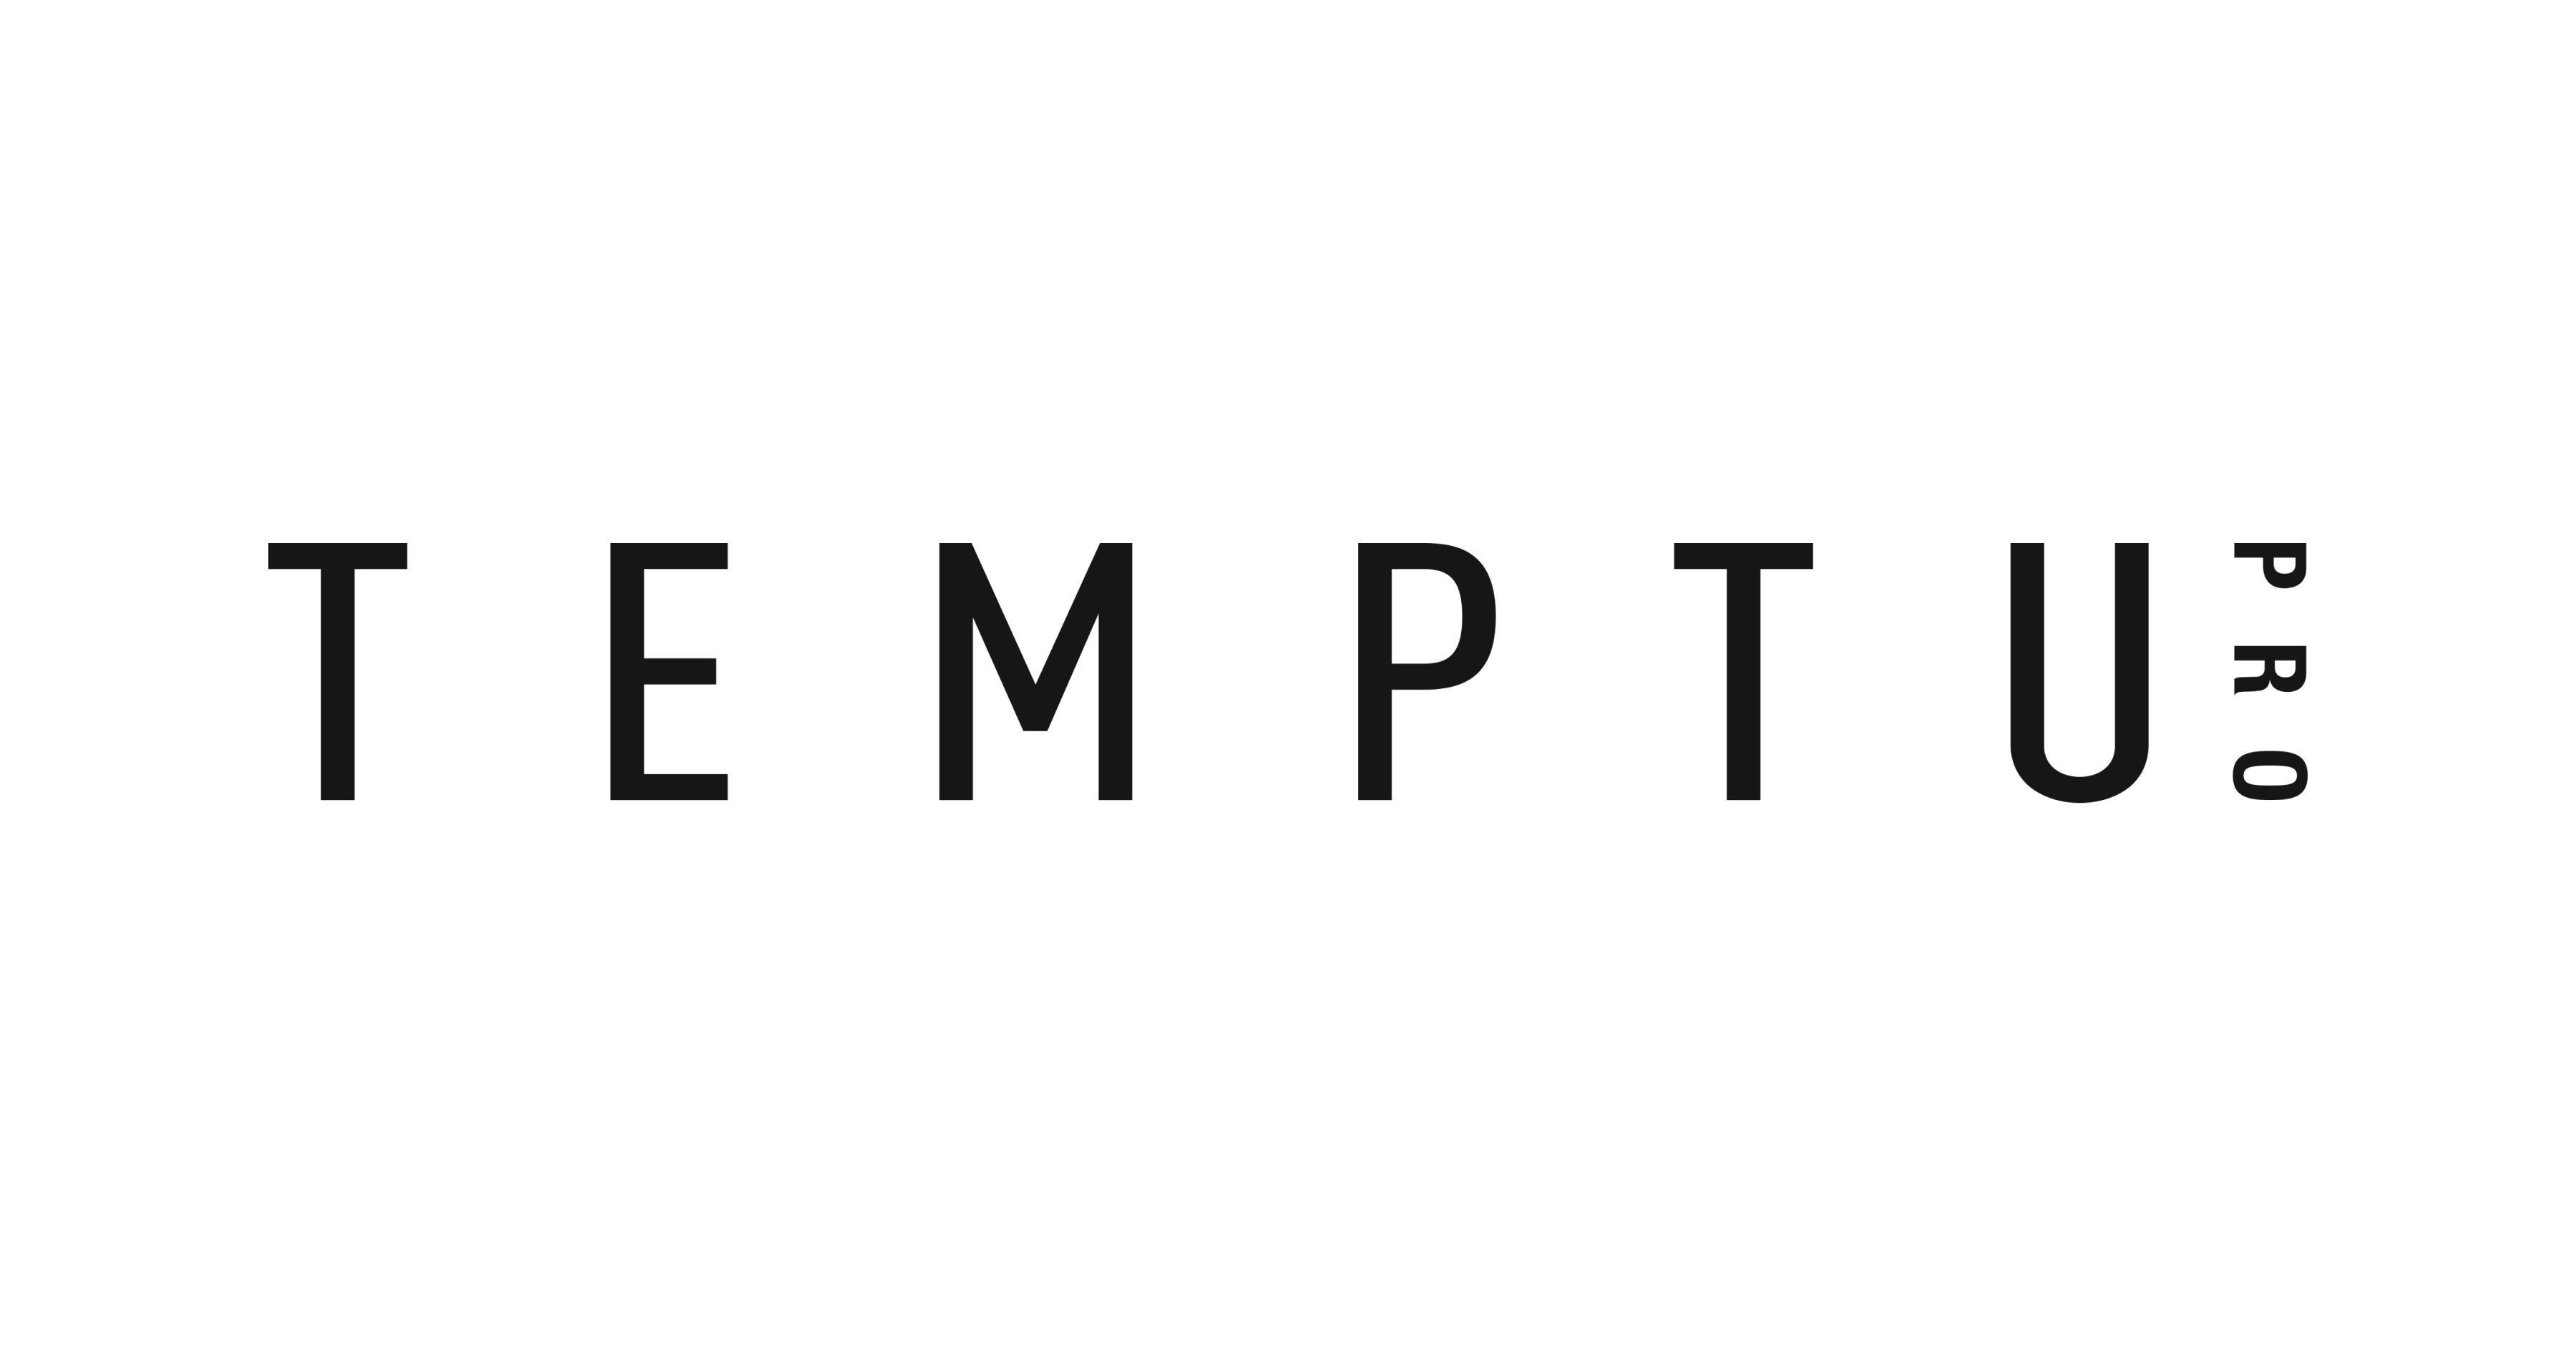 temptupro.com